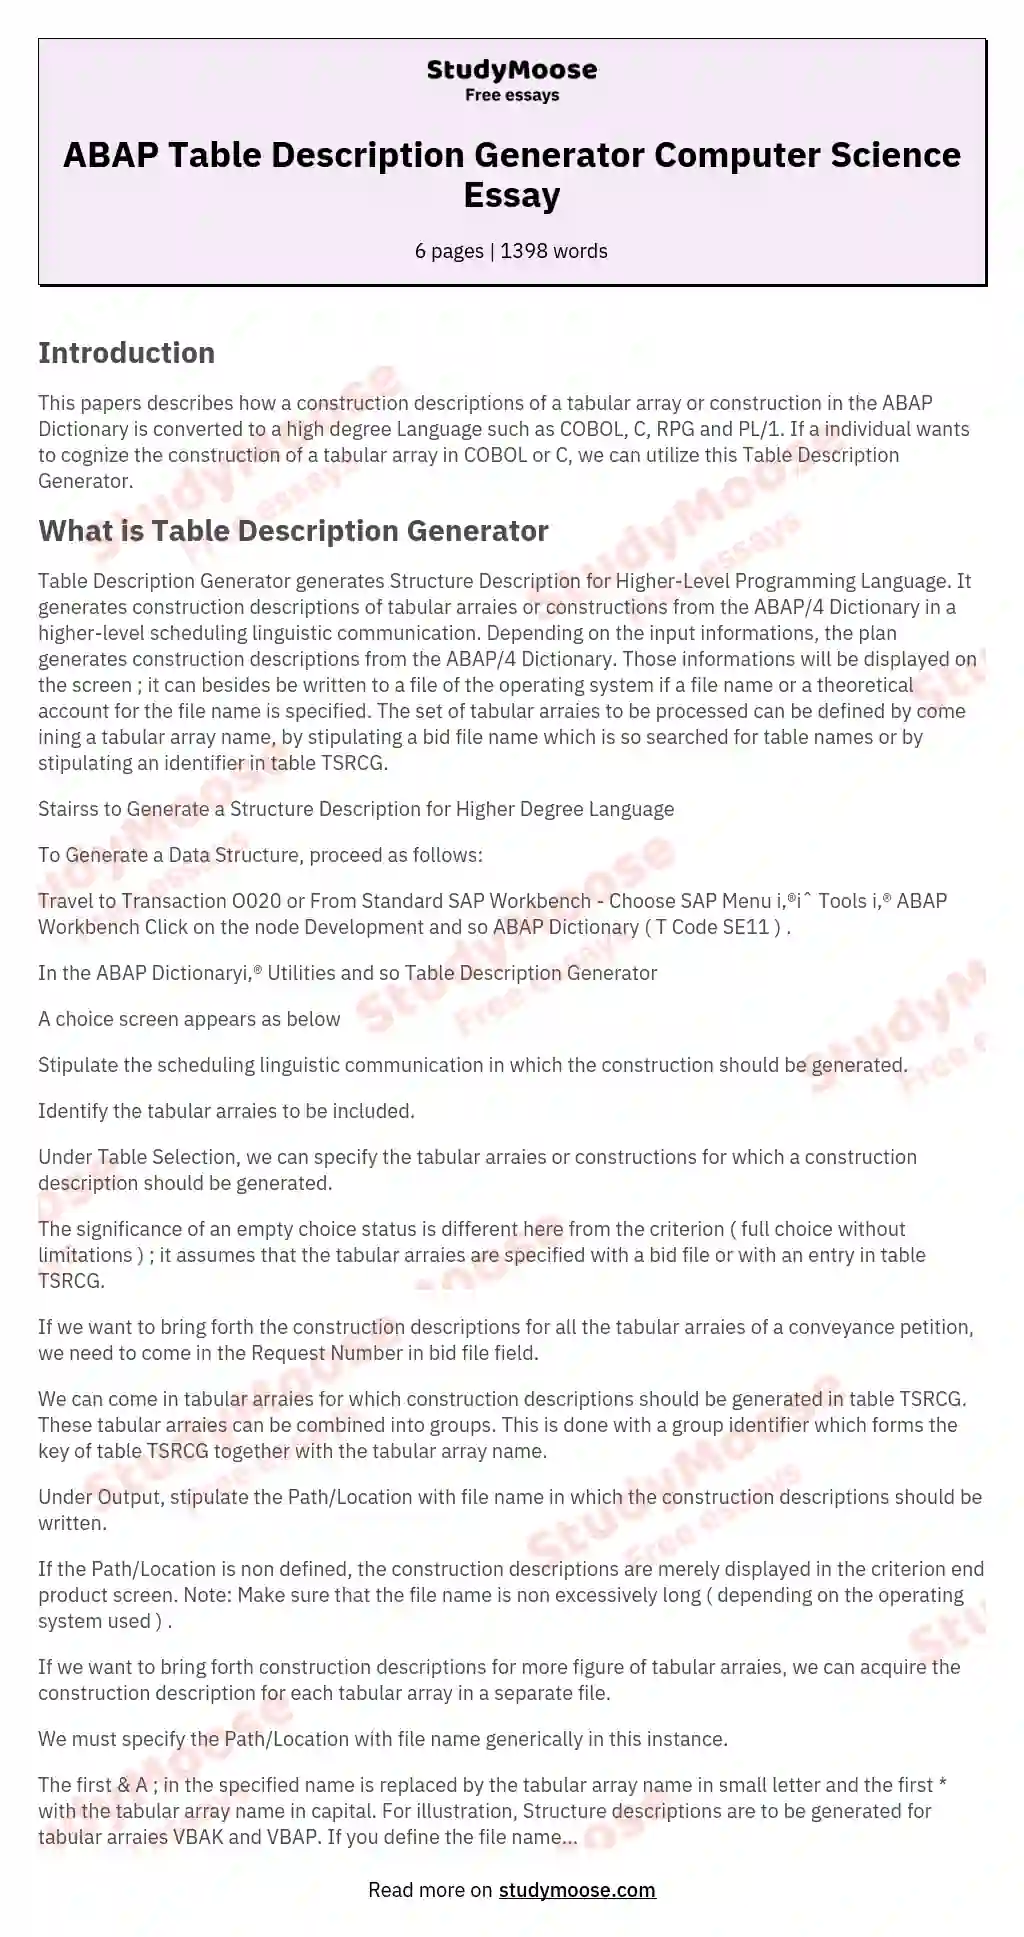 ABAP Table Description Generator Computer Science Essay